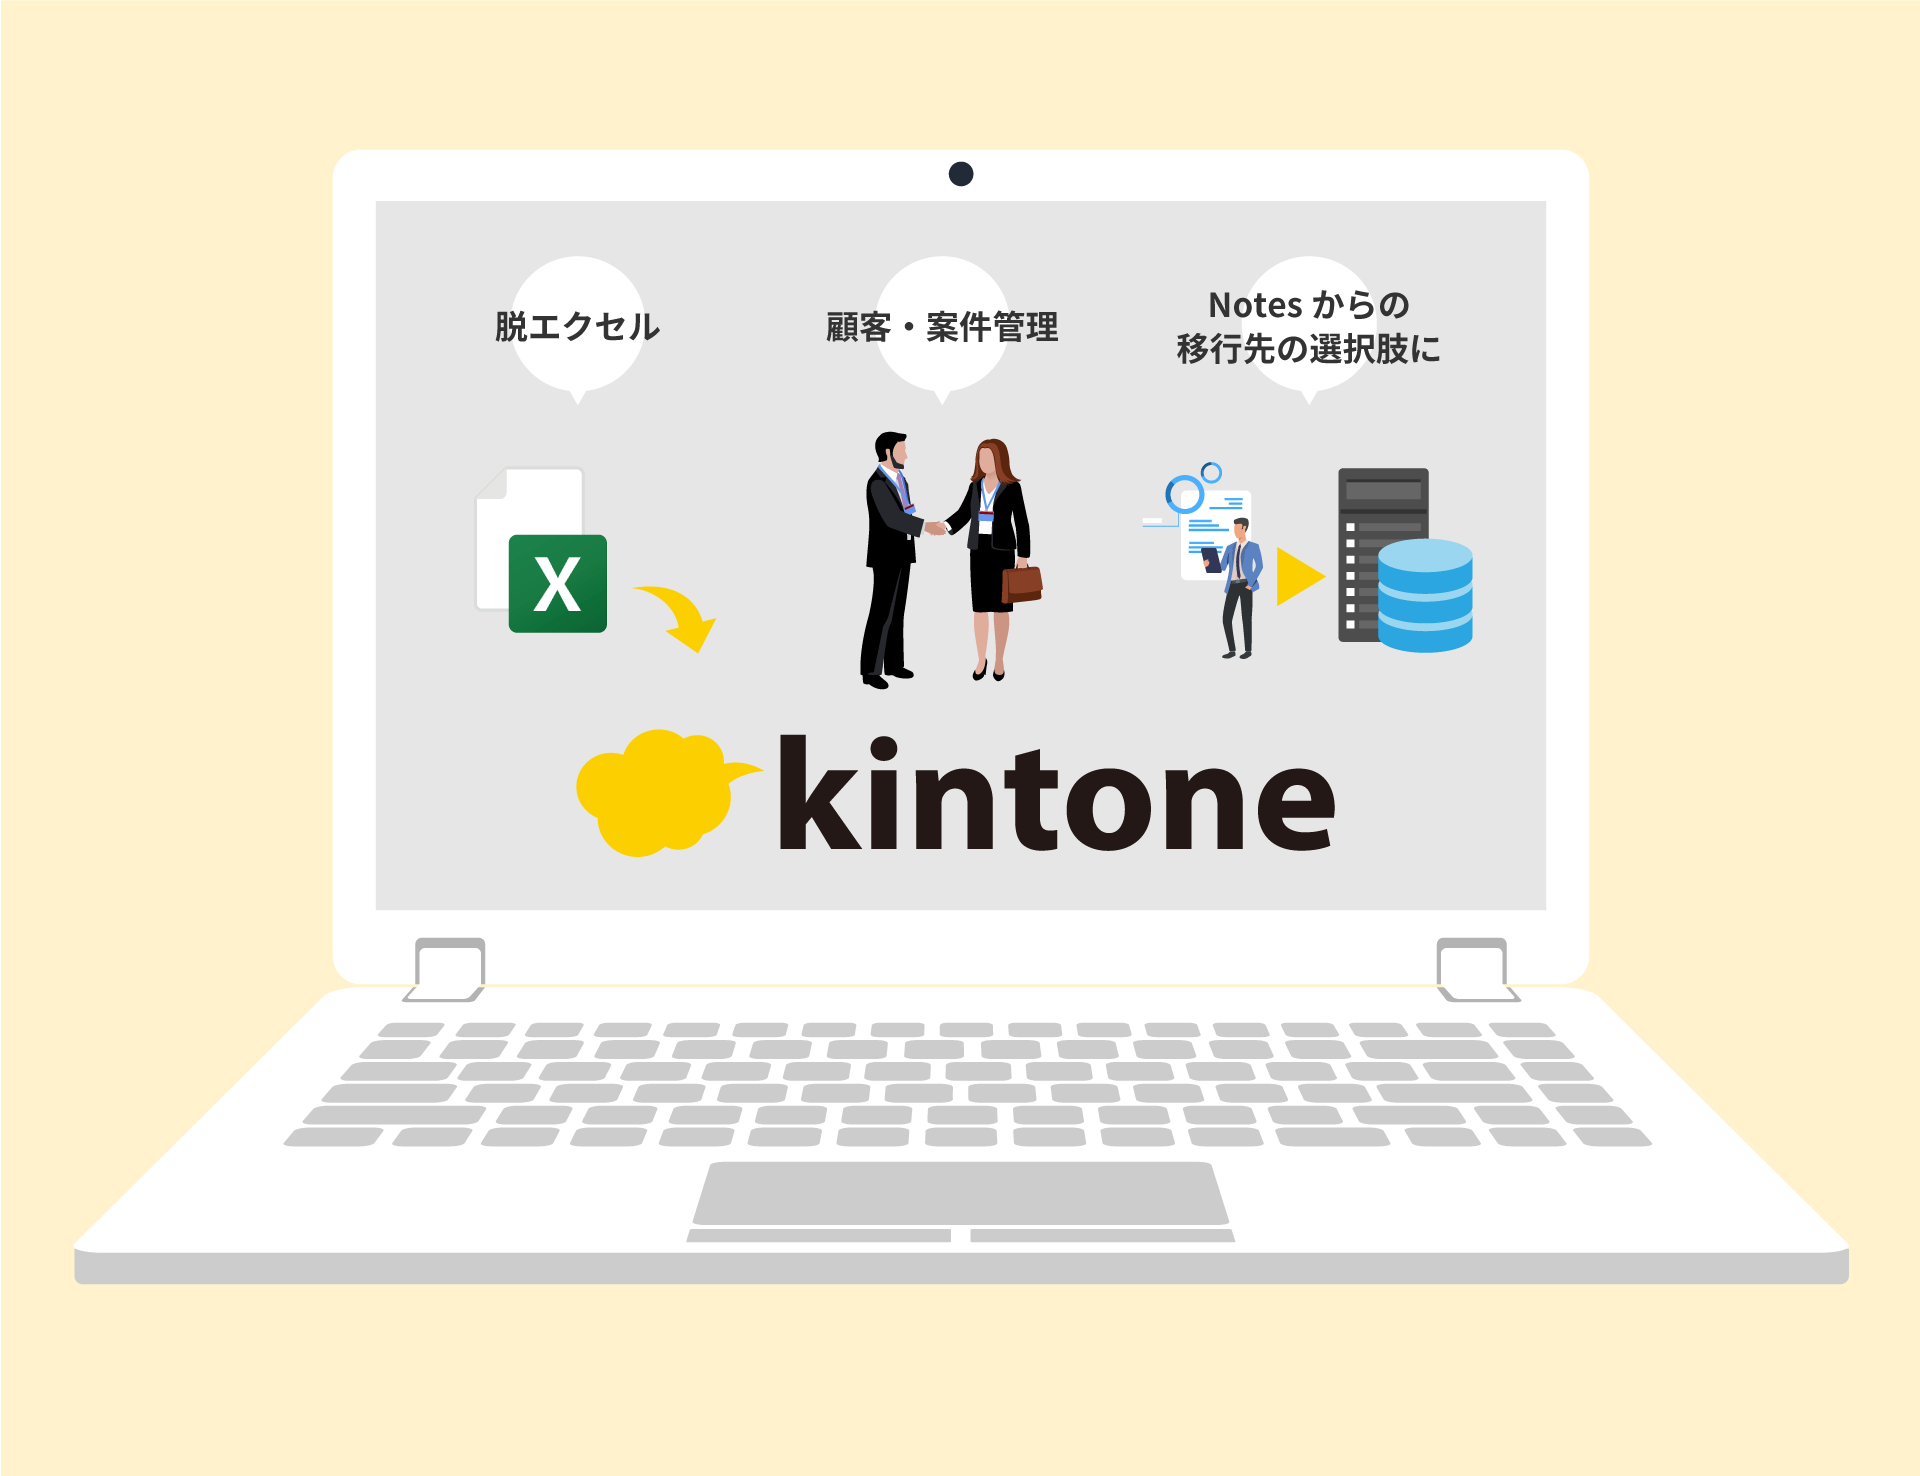 kintone_image01_4.png